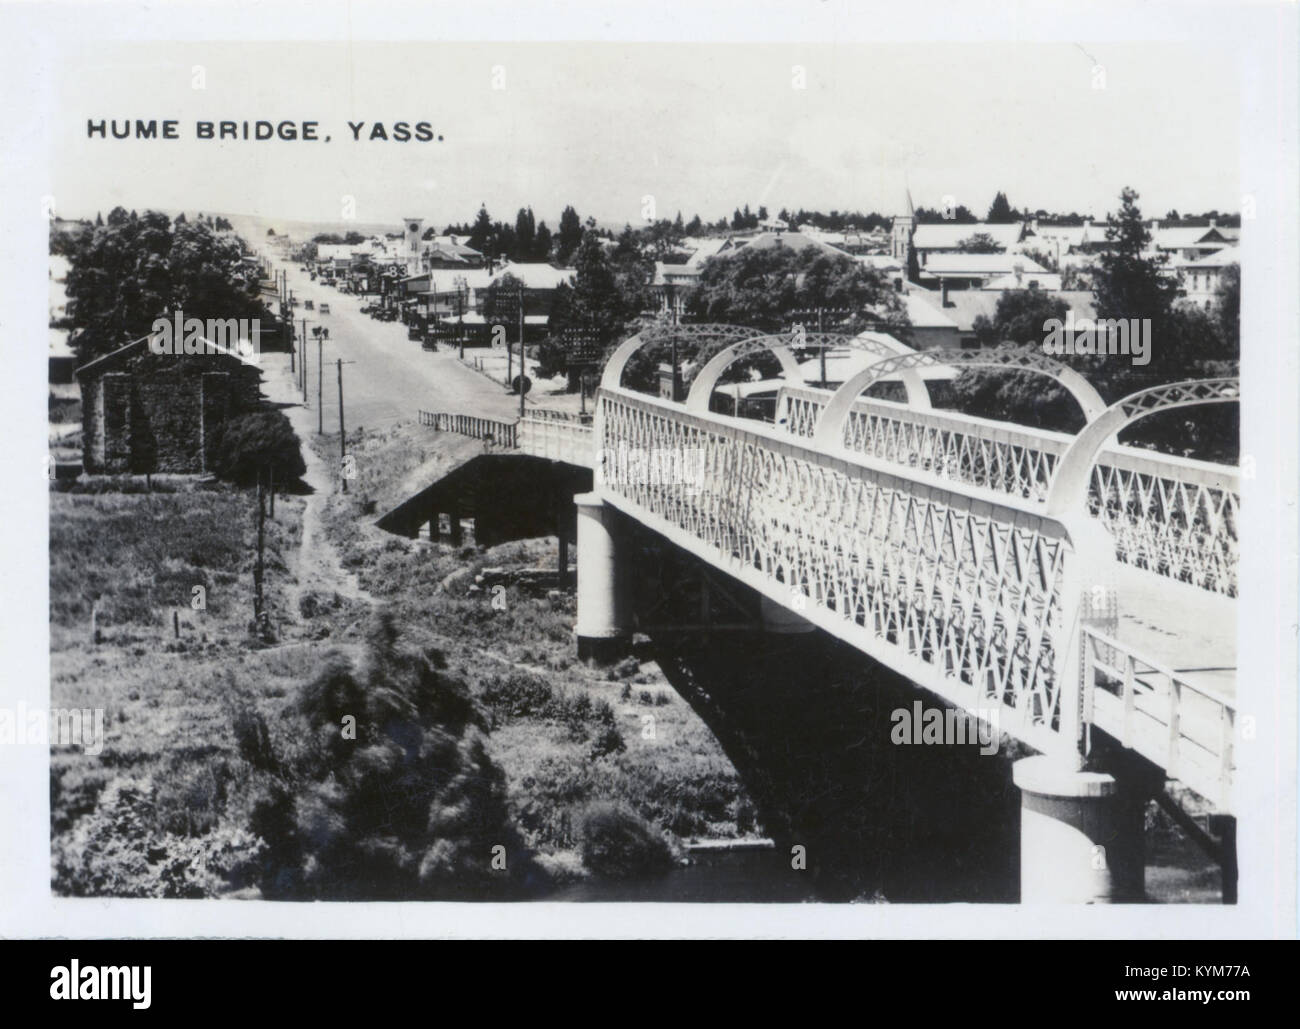 27 Hume Bridge, Yass, NSW, c1948 37313758066 o Stock Photo